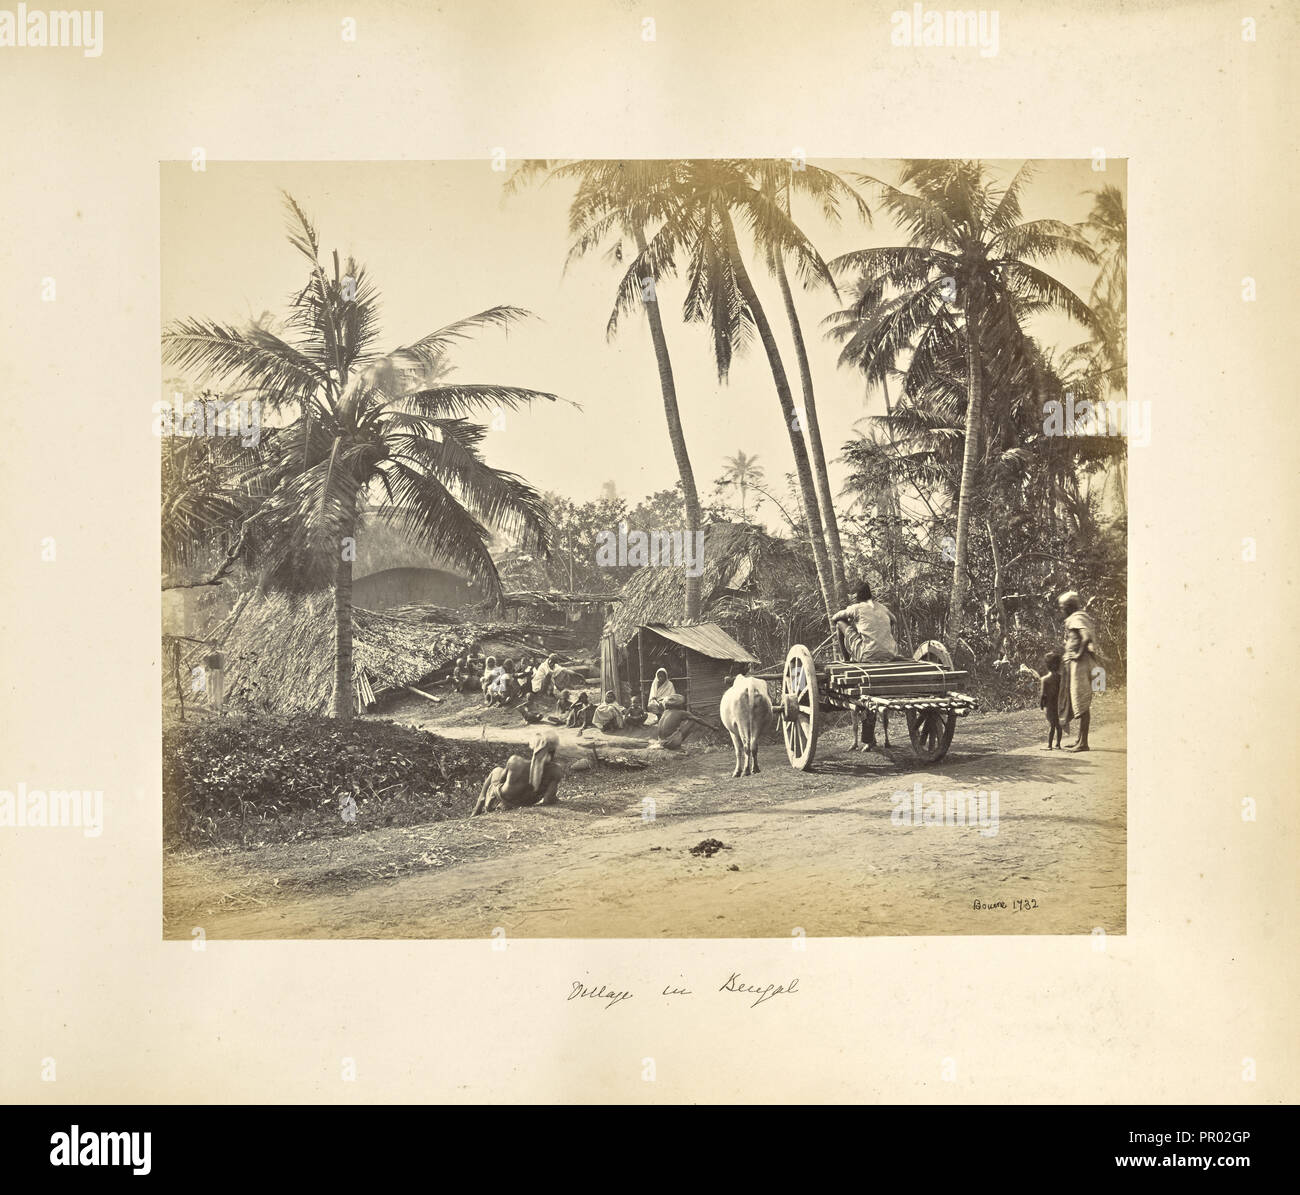 Kalkutta; rustikale Szenen und ländlichen Lebens in Bengalen; Samuel Bourne, Englisch, 1834-1912, Kolkata, West Bengal, Indien, Asien Stockfoto